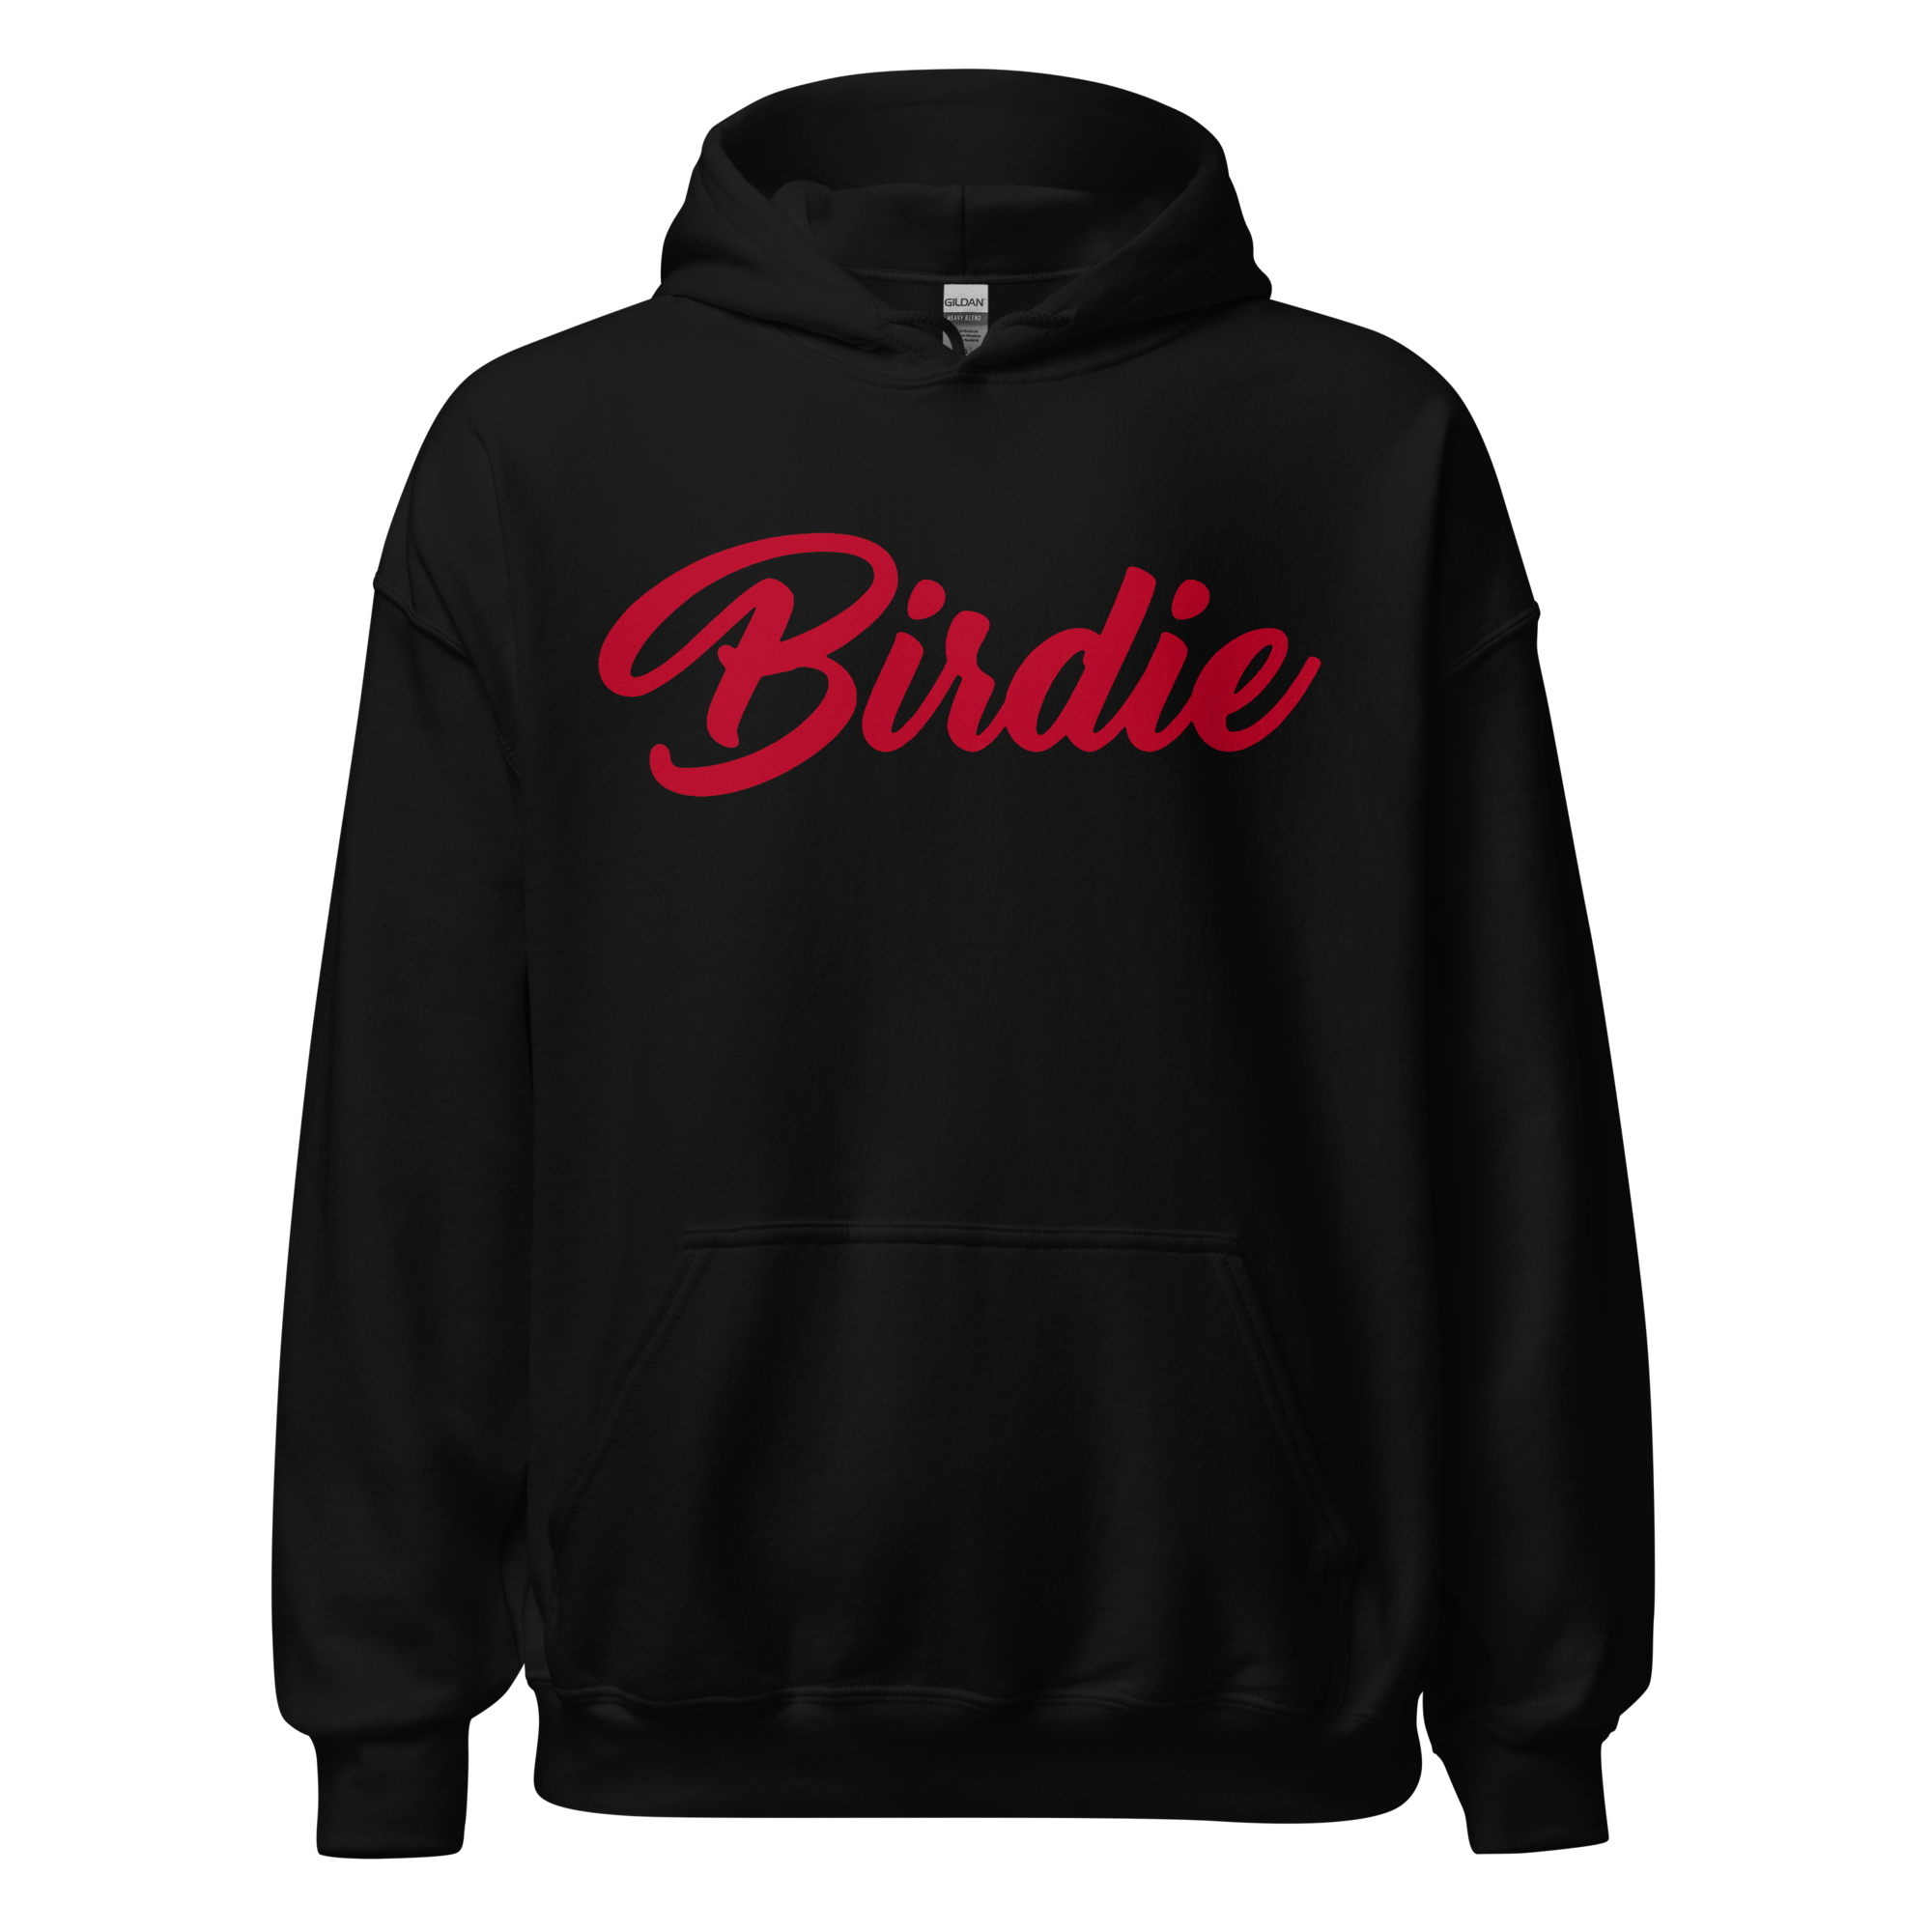 Birdie Threads Hoodie - Black / Red